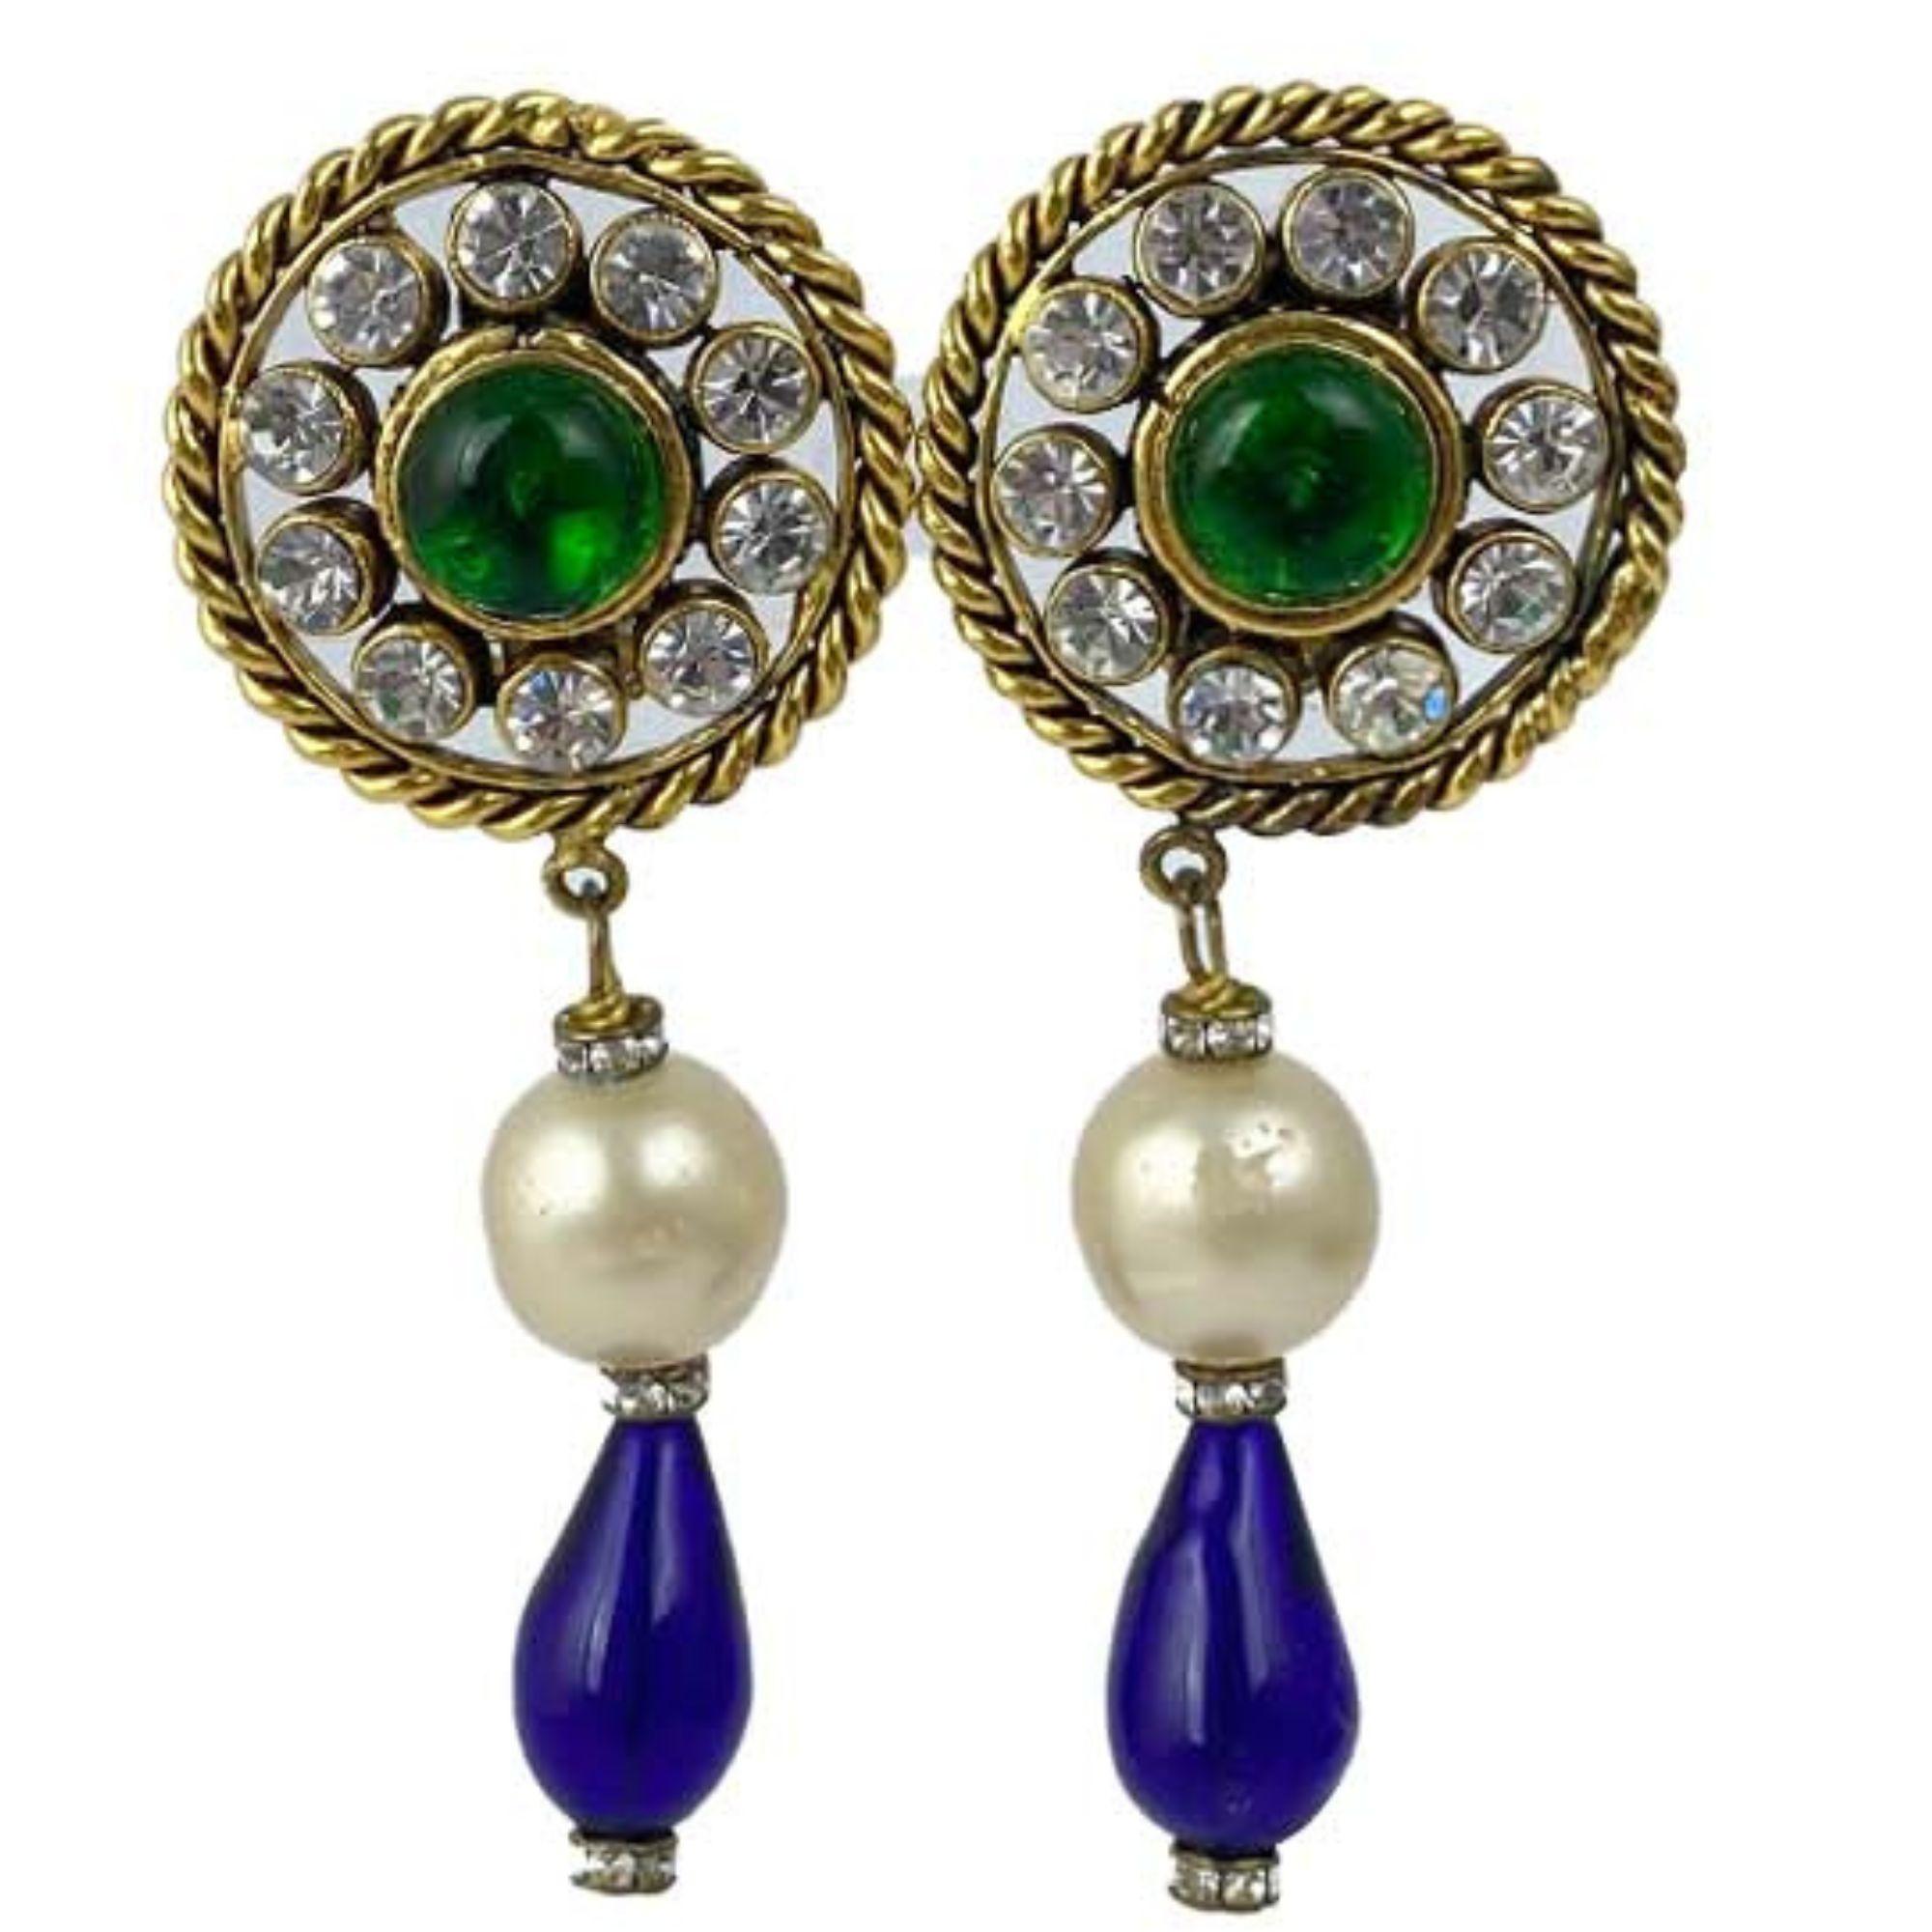 Vintage Chanel GOLD/BLUE/GREEN 1986 Gripoix LG clip on dangle earrings featuring emerald green gripoix glass domed cabochon surrounded by 10 sparkling clear crystals. En excellent état avec des signes d'usure minimes et des réparations ont été